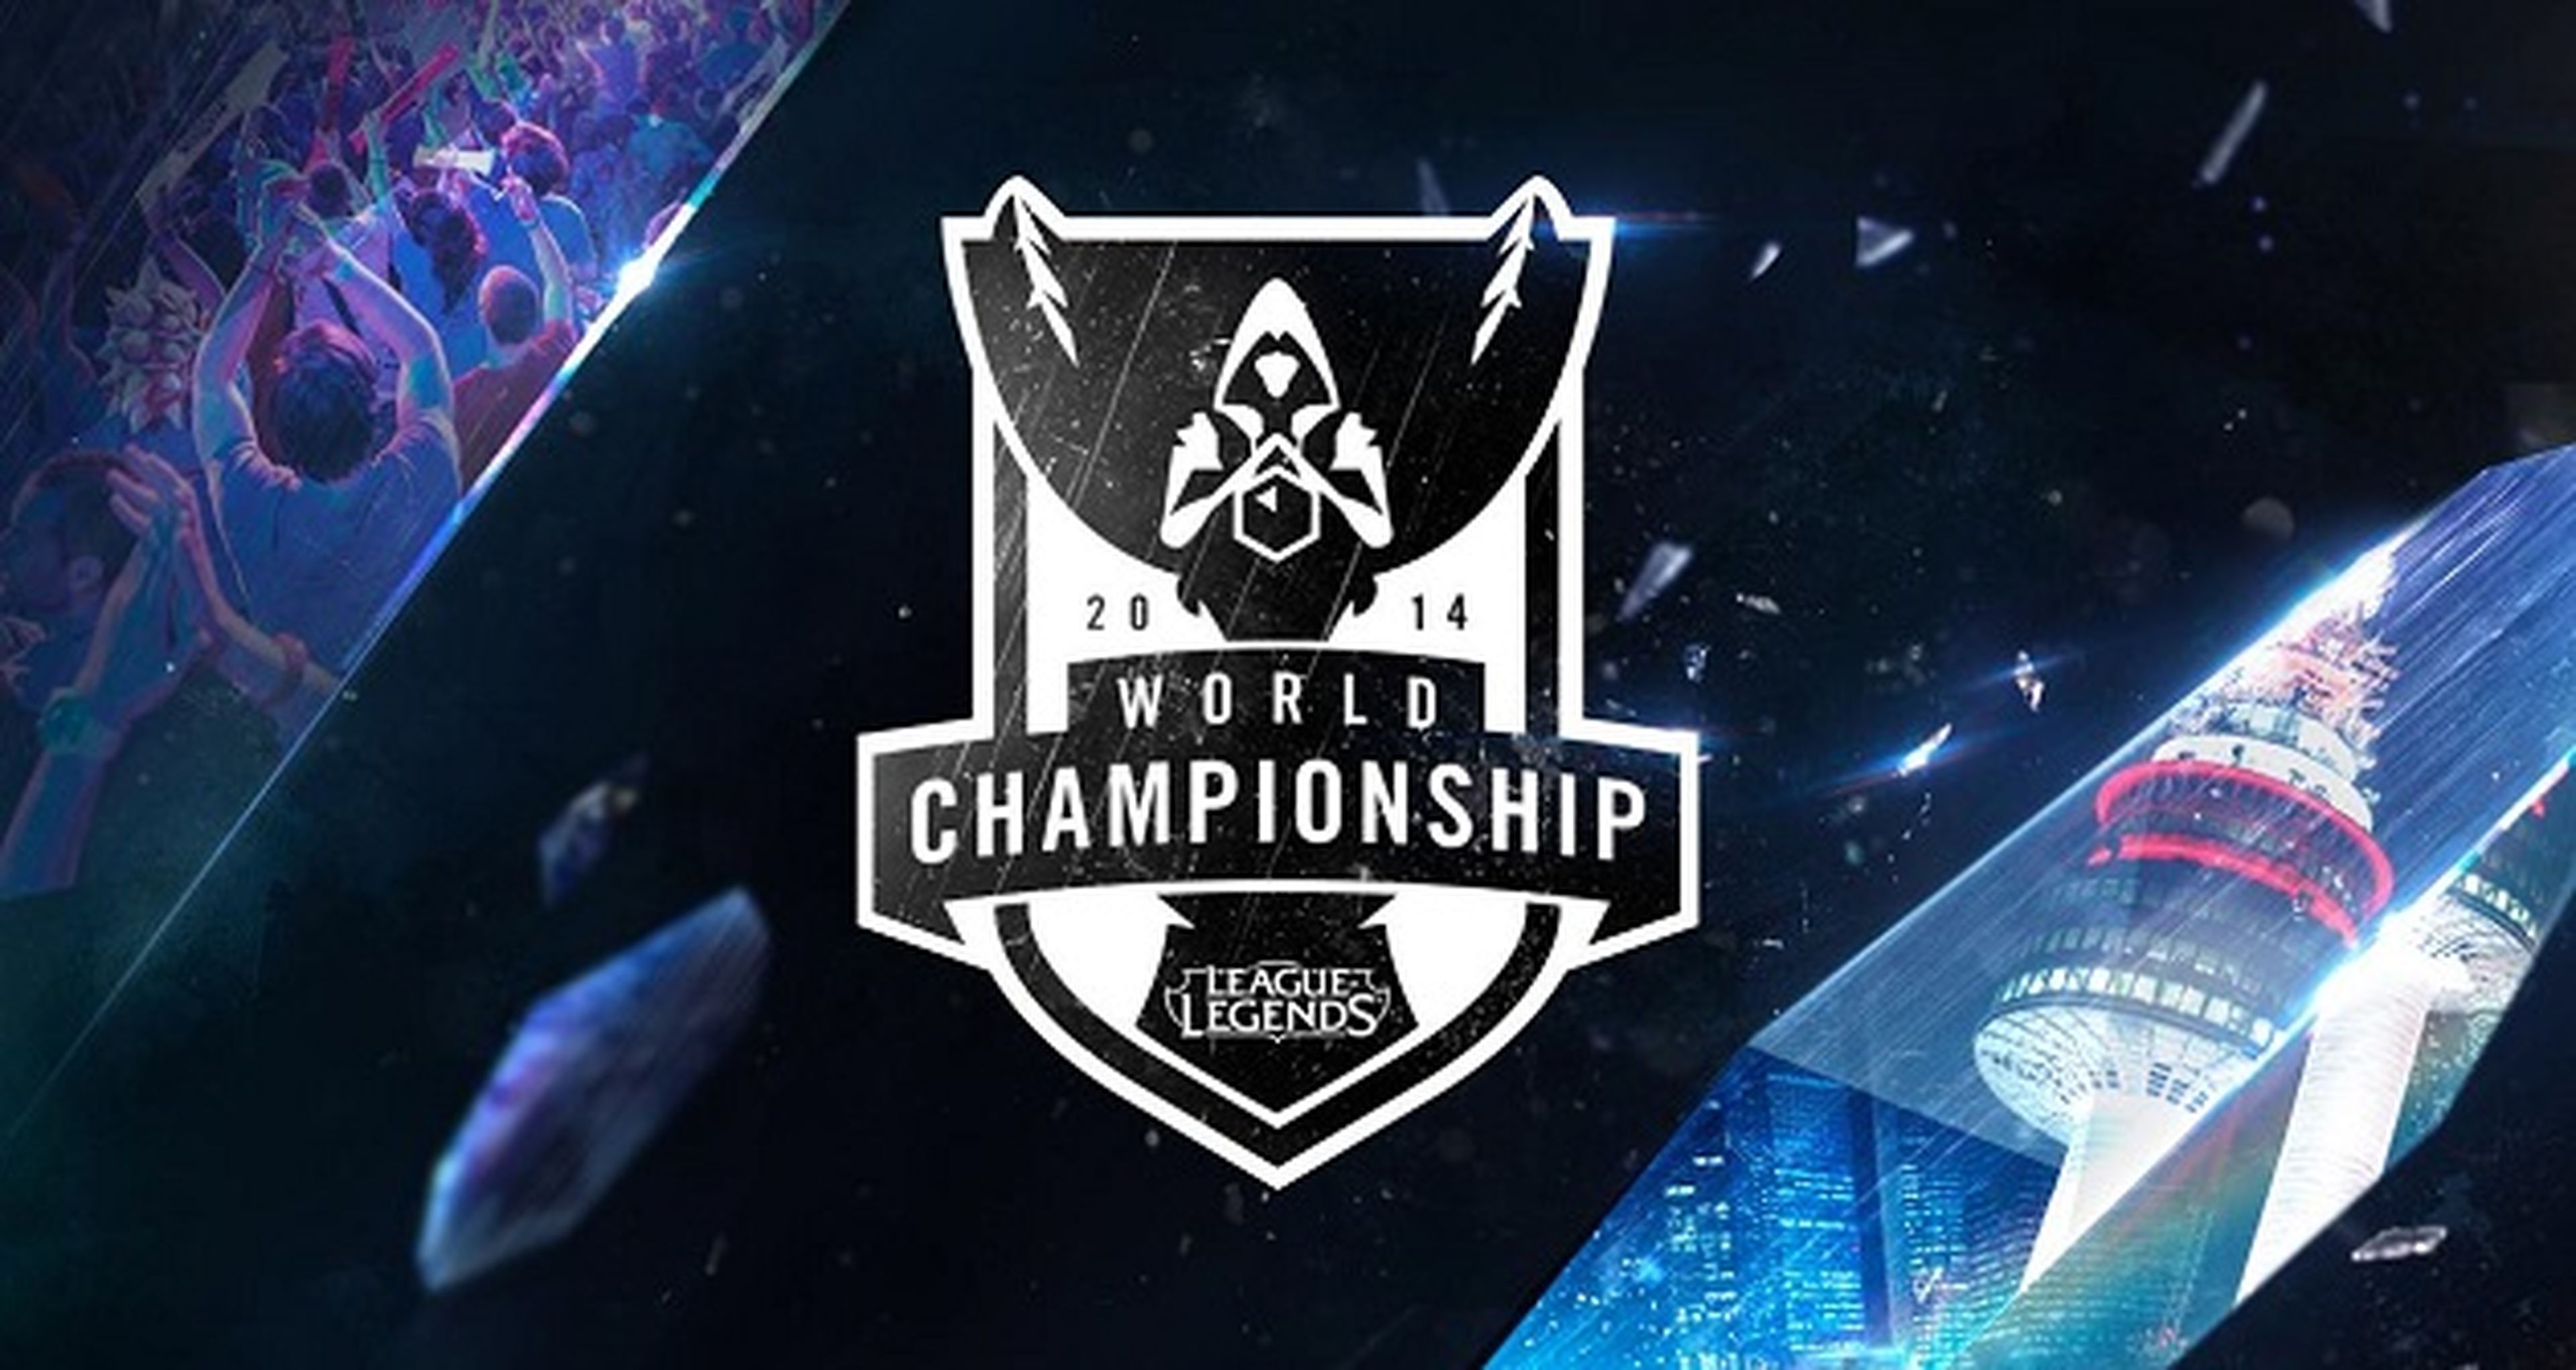 Seúl acogerá las finales mundiales de League of Legends